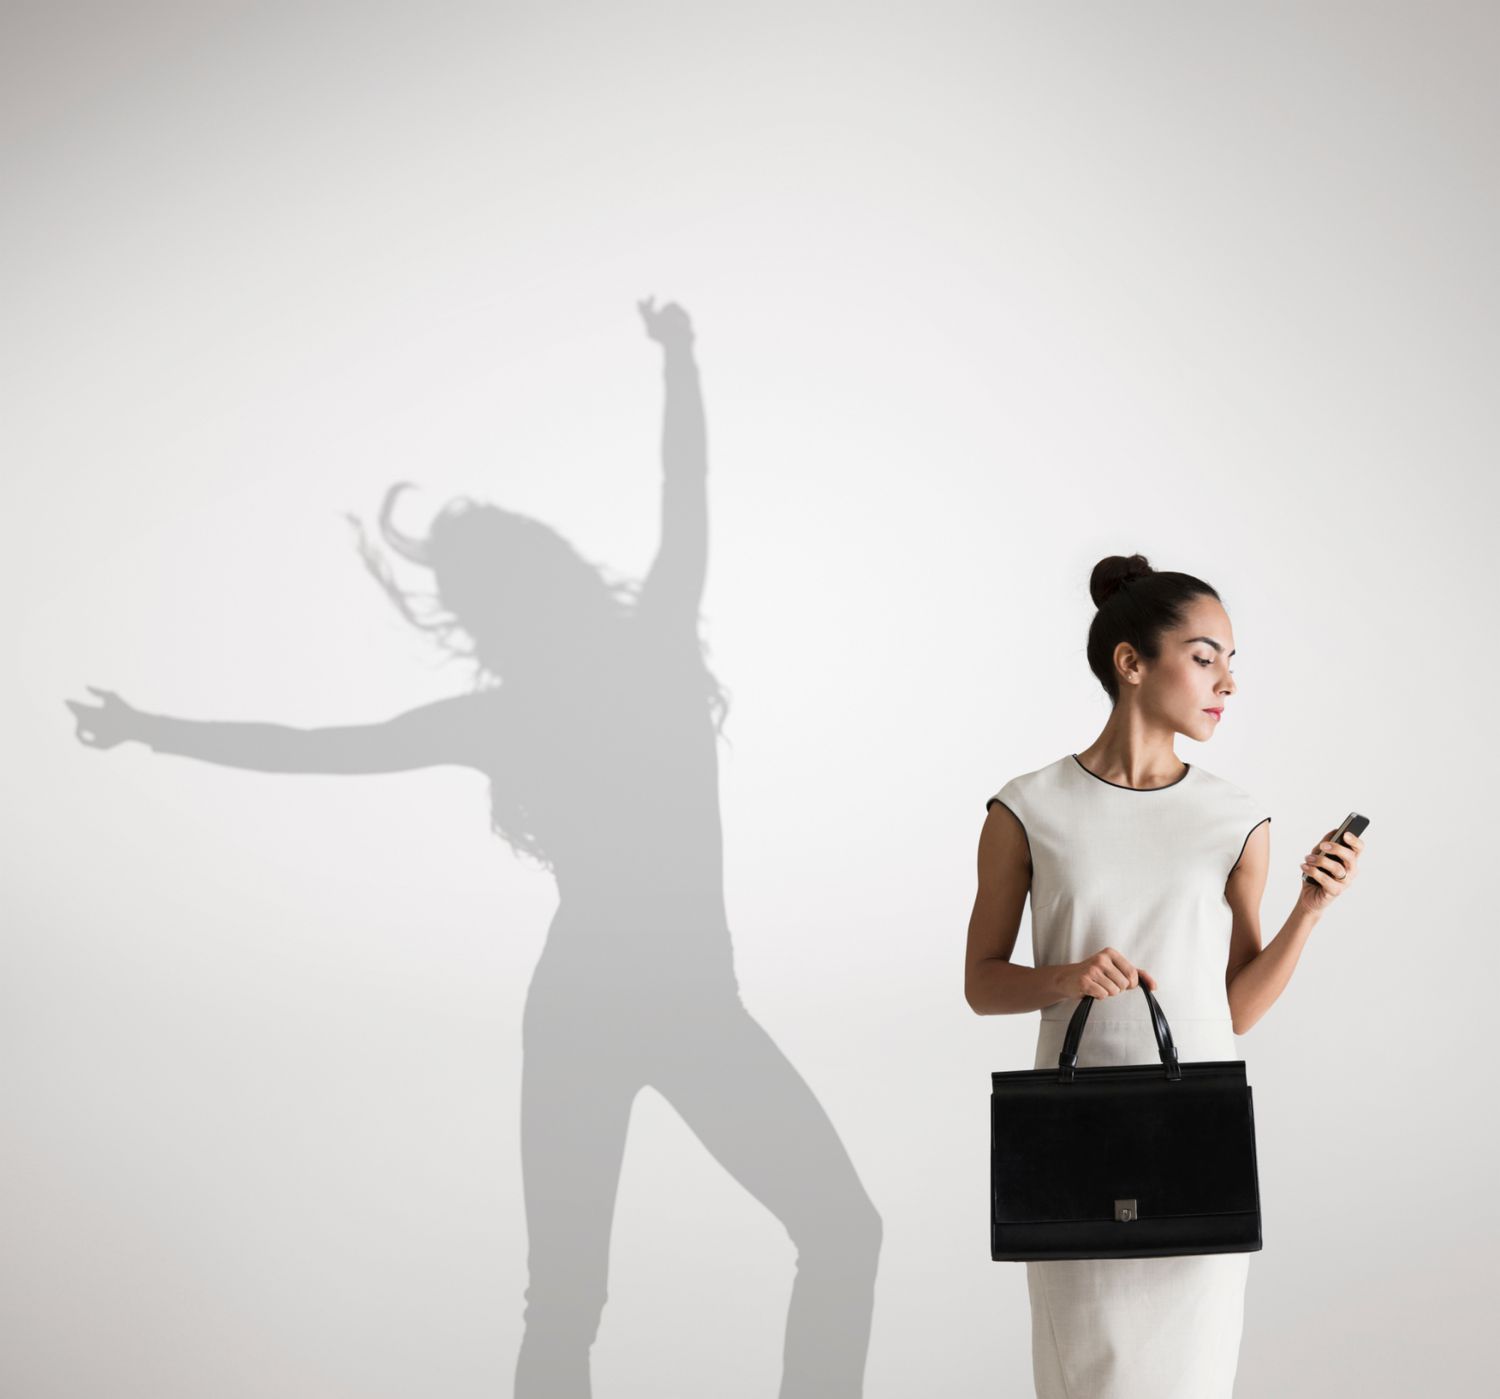 一个女商人看着自己的工作手机在自己的影子前跳舞，代表着工作与生活的平衡。